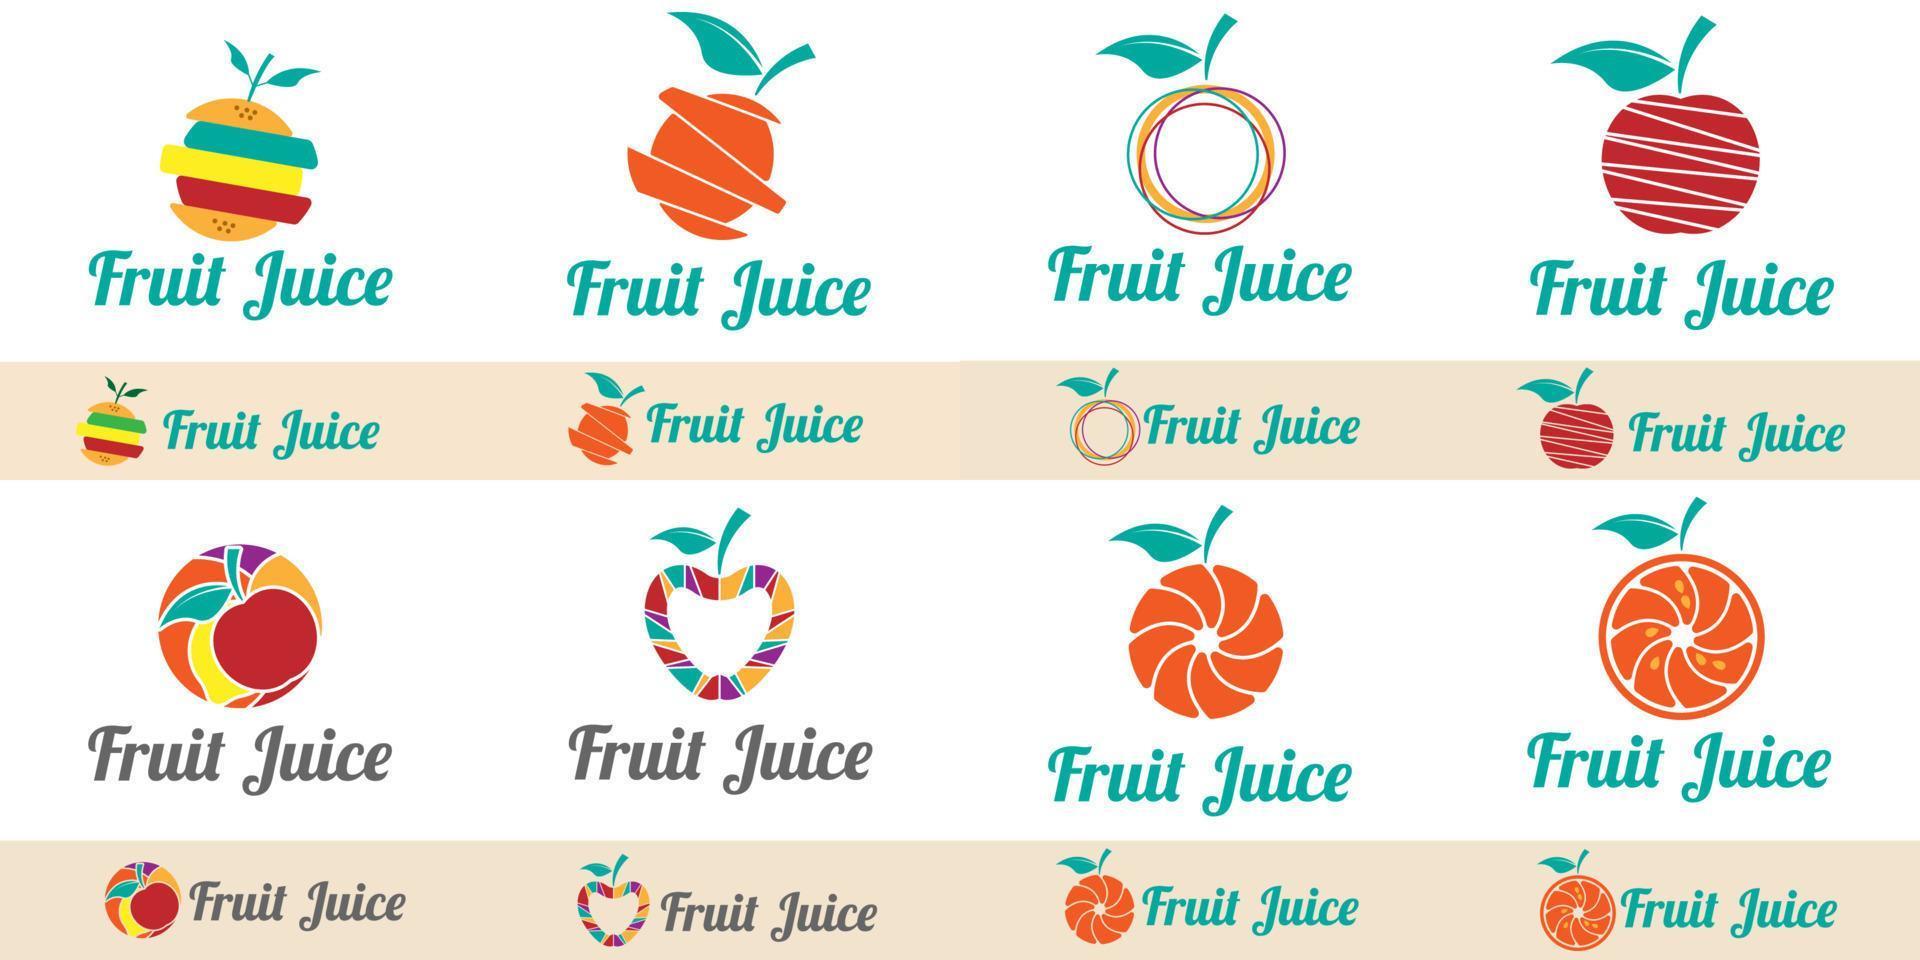 fruktjuice logotyp set design vektor